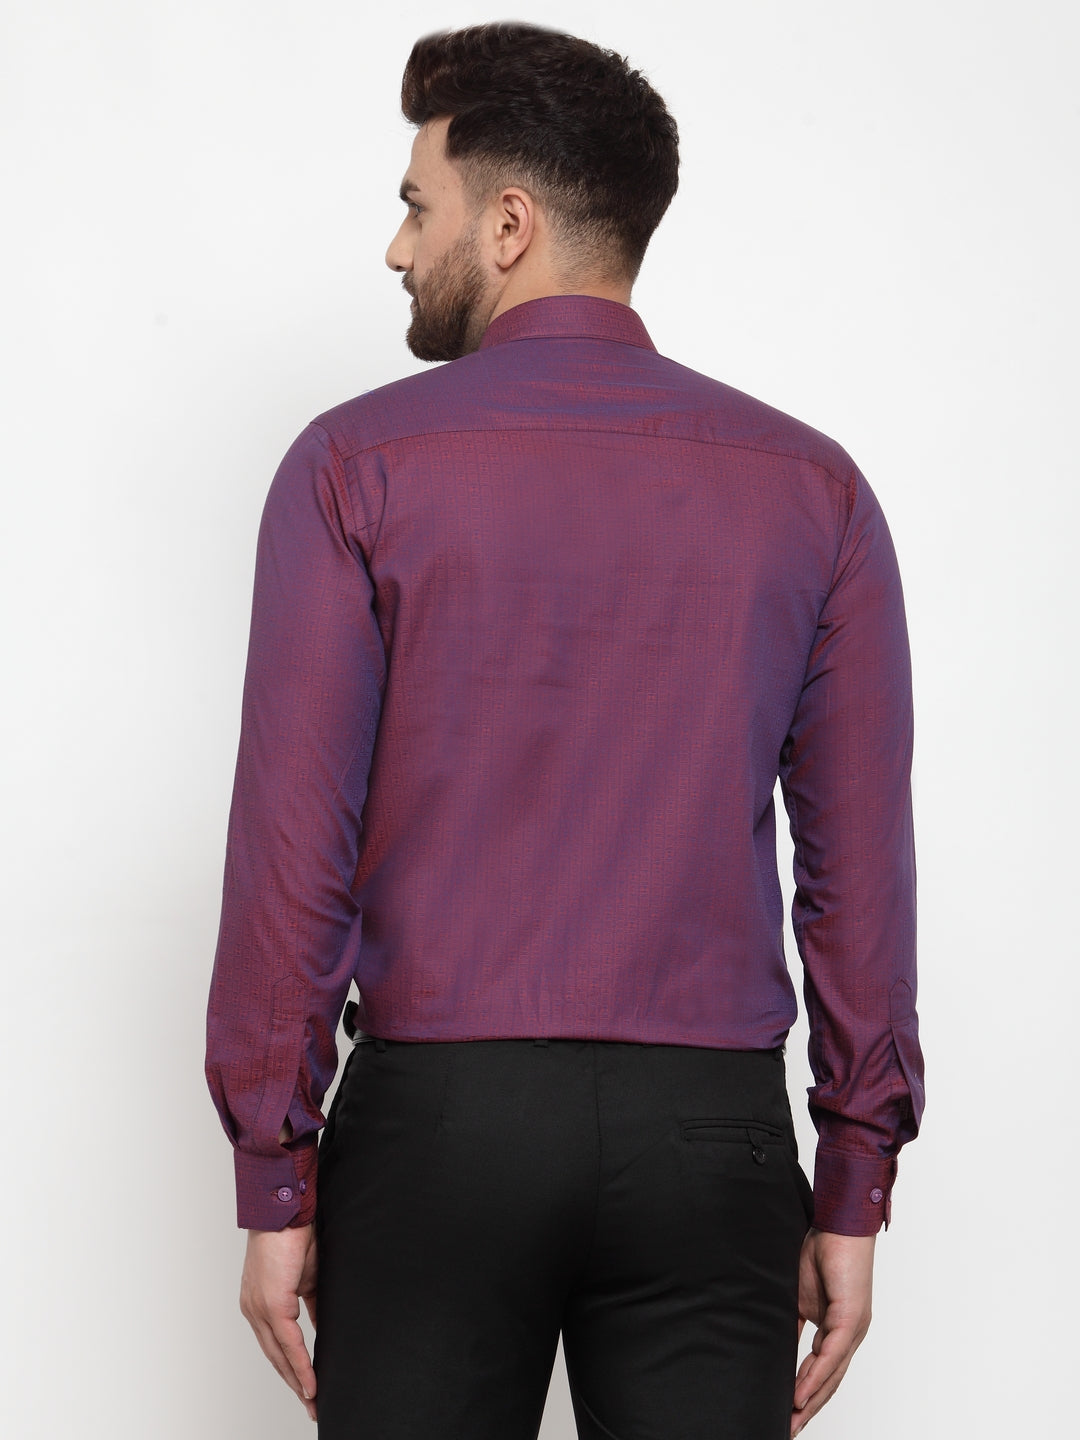 Copperline Men Purple Comfort Slim Fit Self Design Formal Shirt Copperline